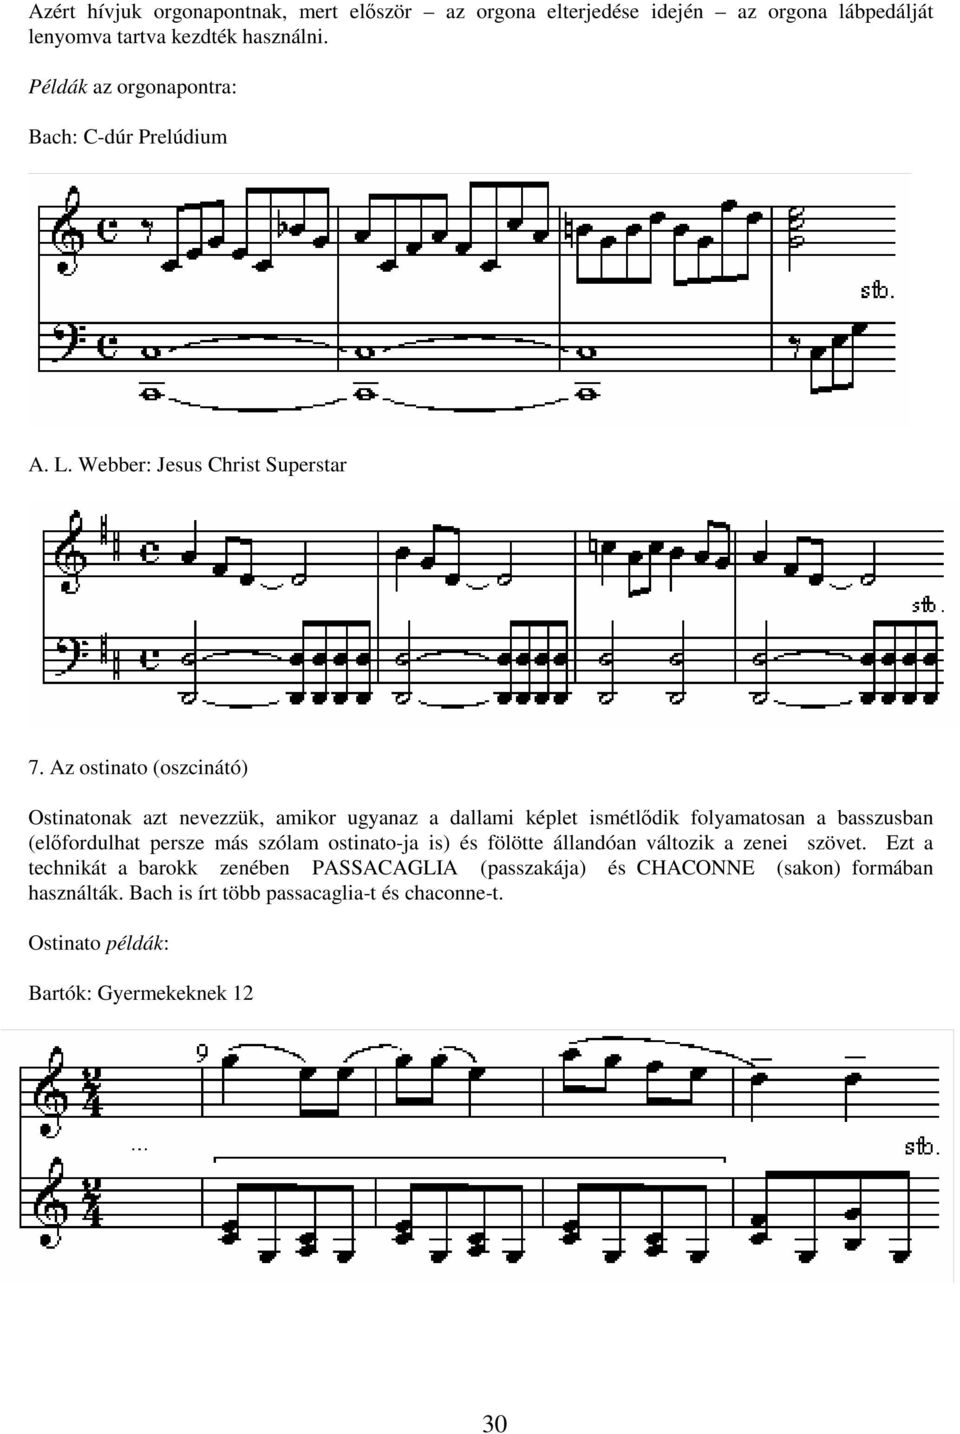 Az ostinato (oszcinátó) Ostinatonak azt nevezzük, amikor ugyanaz a dallami képlet ismétldik folyamatosan a basszusban (elfordulhat persze más szólam